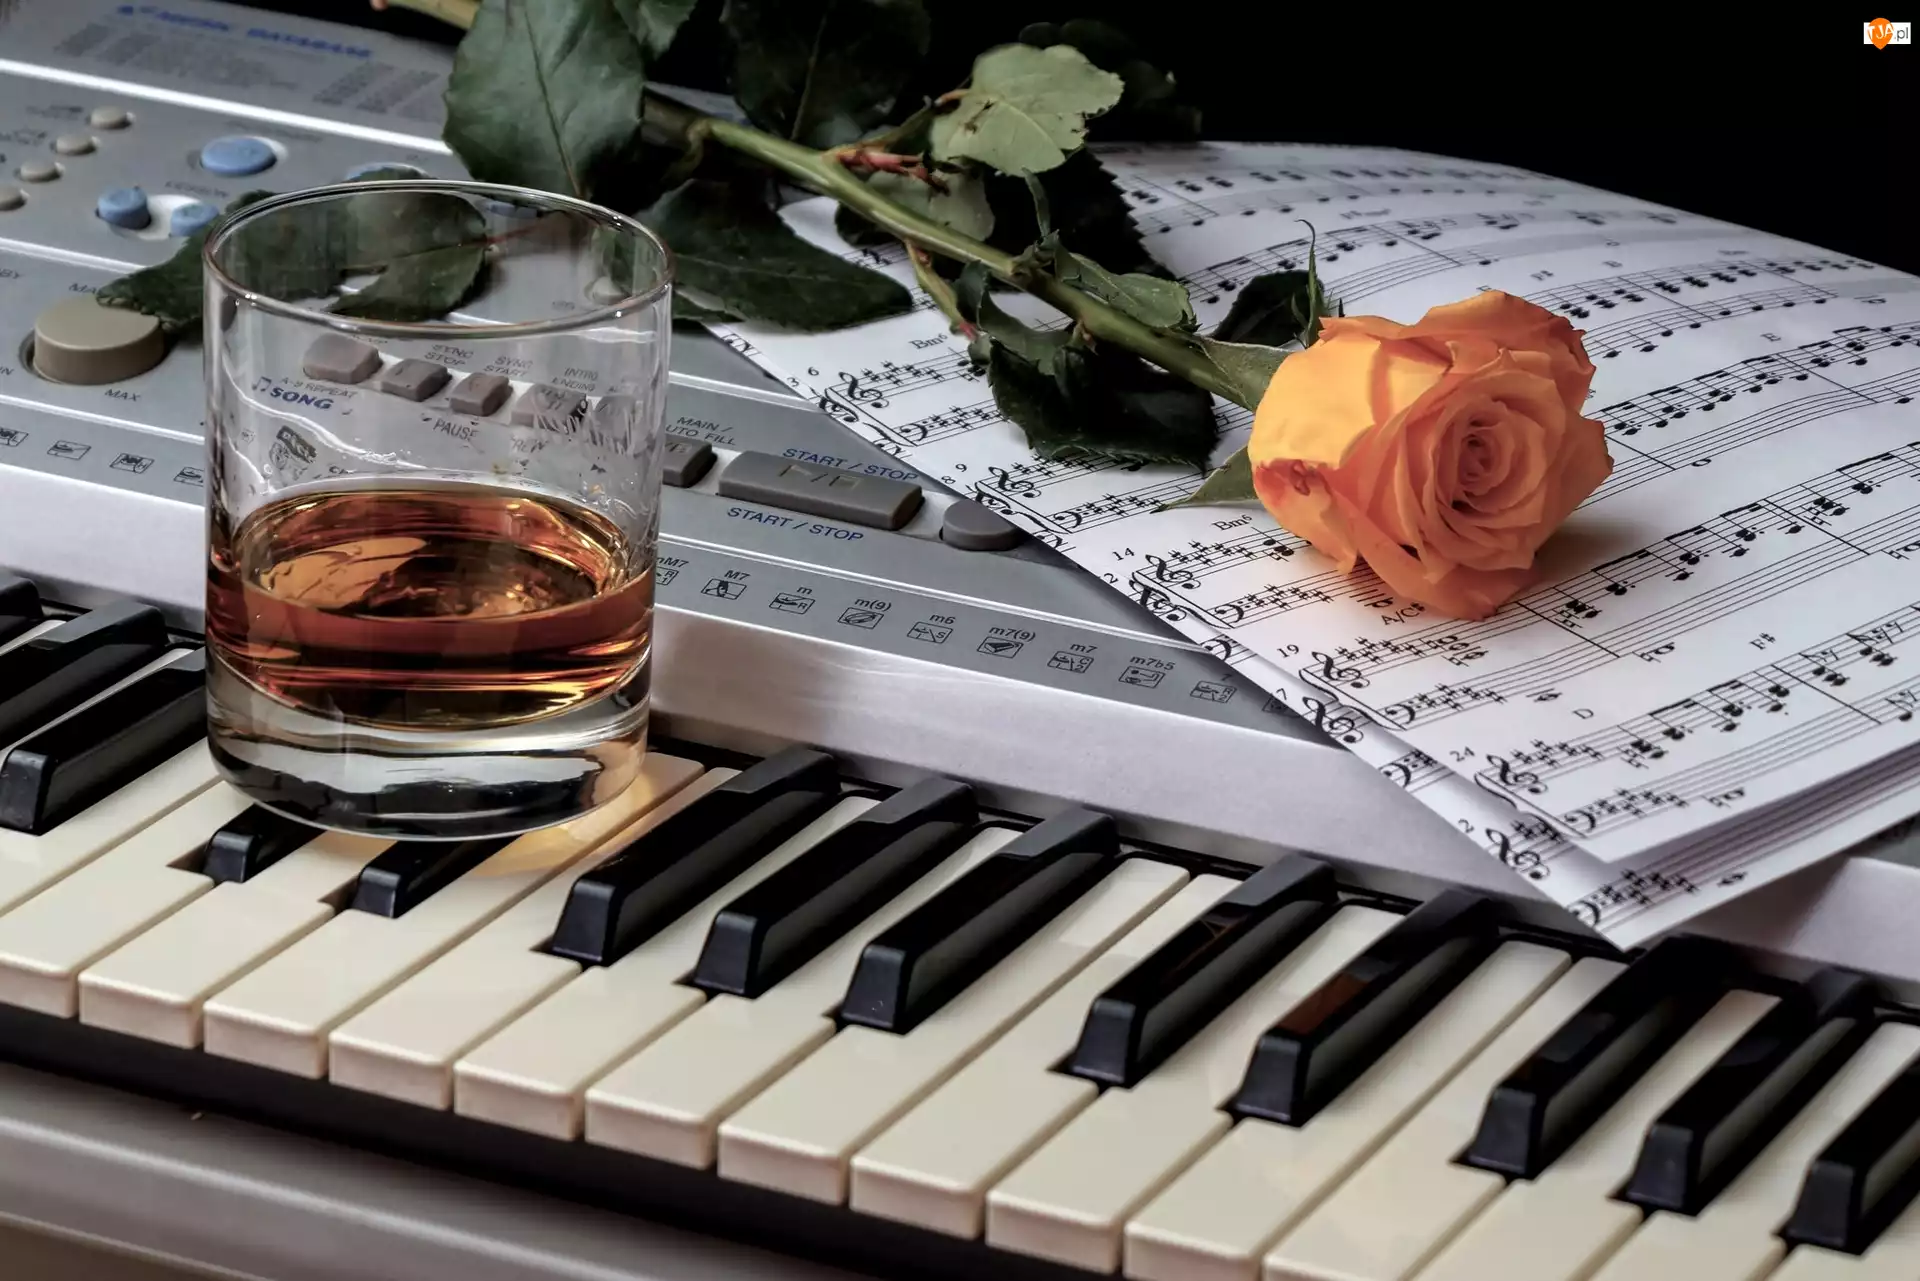 Róża, Herbaciana, Szklanka, Keyboard, Nuty, Instrument muzyczny